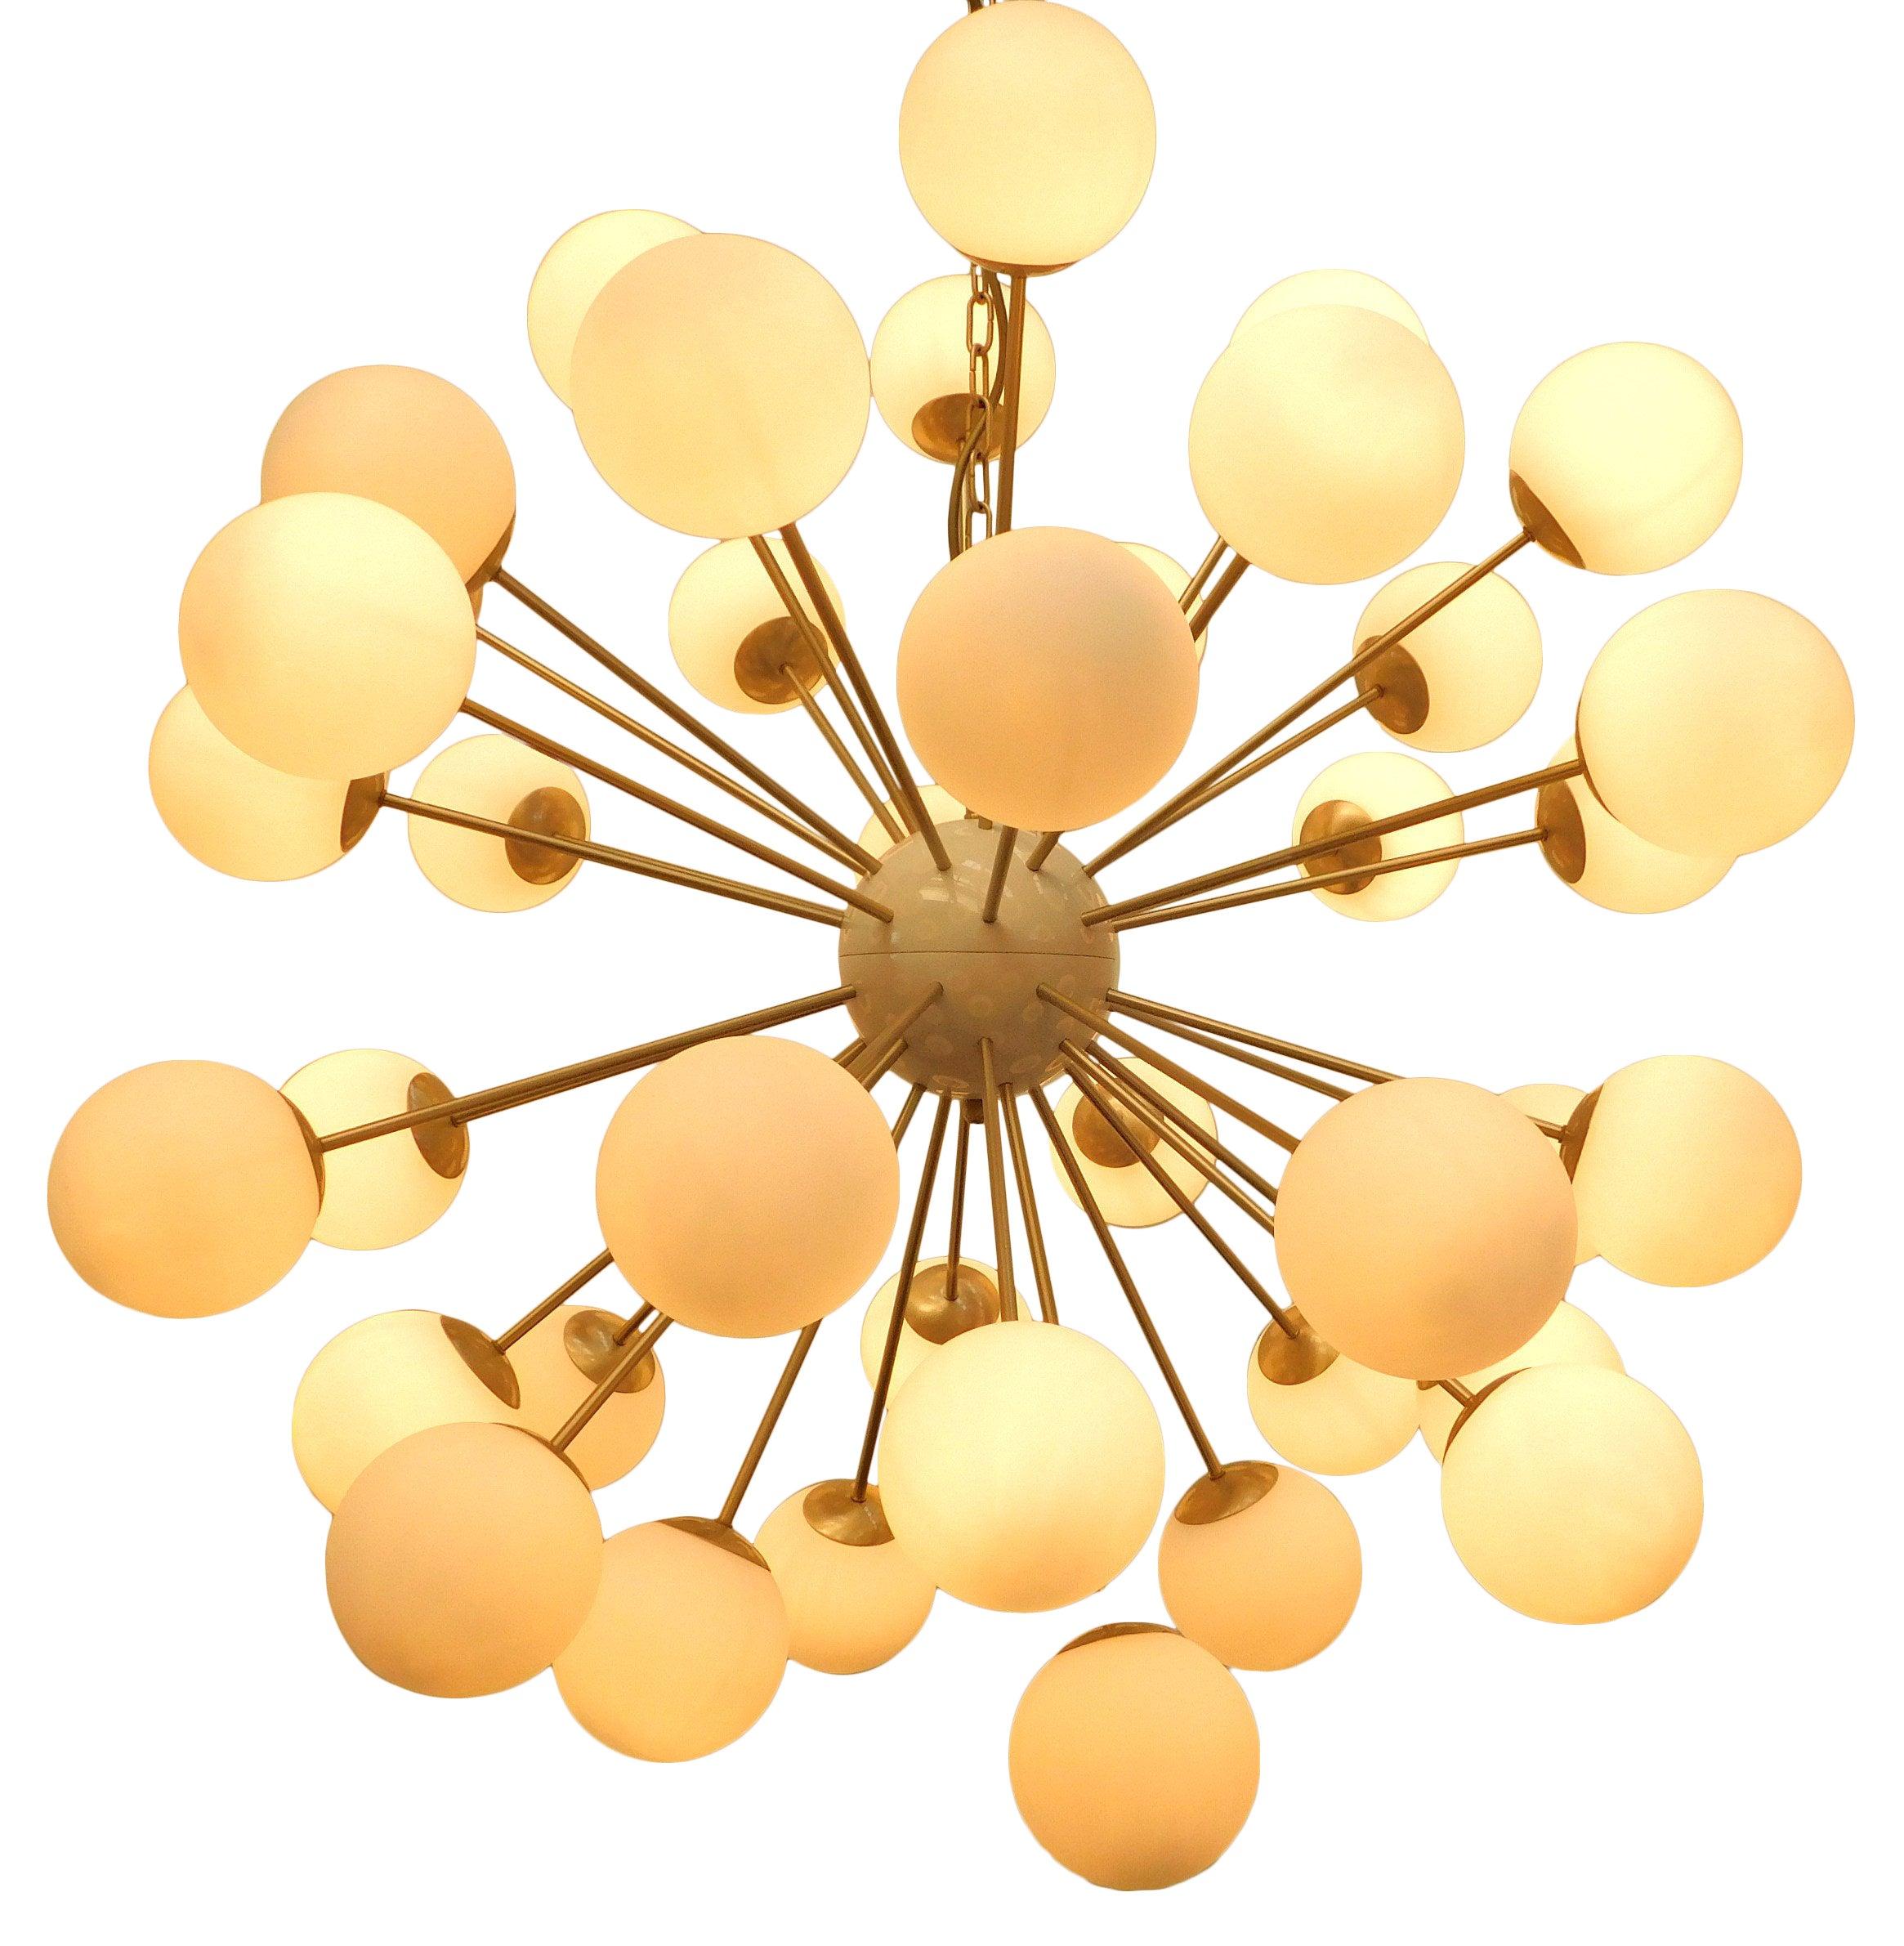 Lustre italien en forme de sputnik avec 40 globes en verre de Murano montés sur une armature en laiton / Conçu par Fabio Bergomi pour Fabio Ltd / Fabriqué en Italie.
40 lampes / type E12 ou E14 / max 40W chacune
Mesures : diamètre 49 pouces /